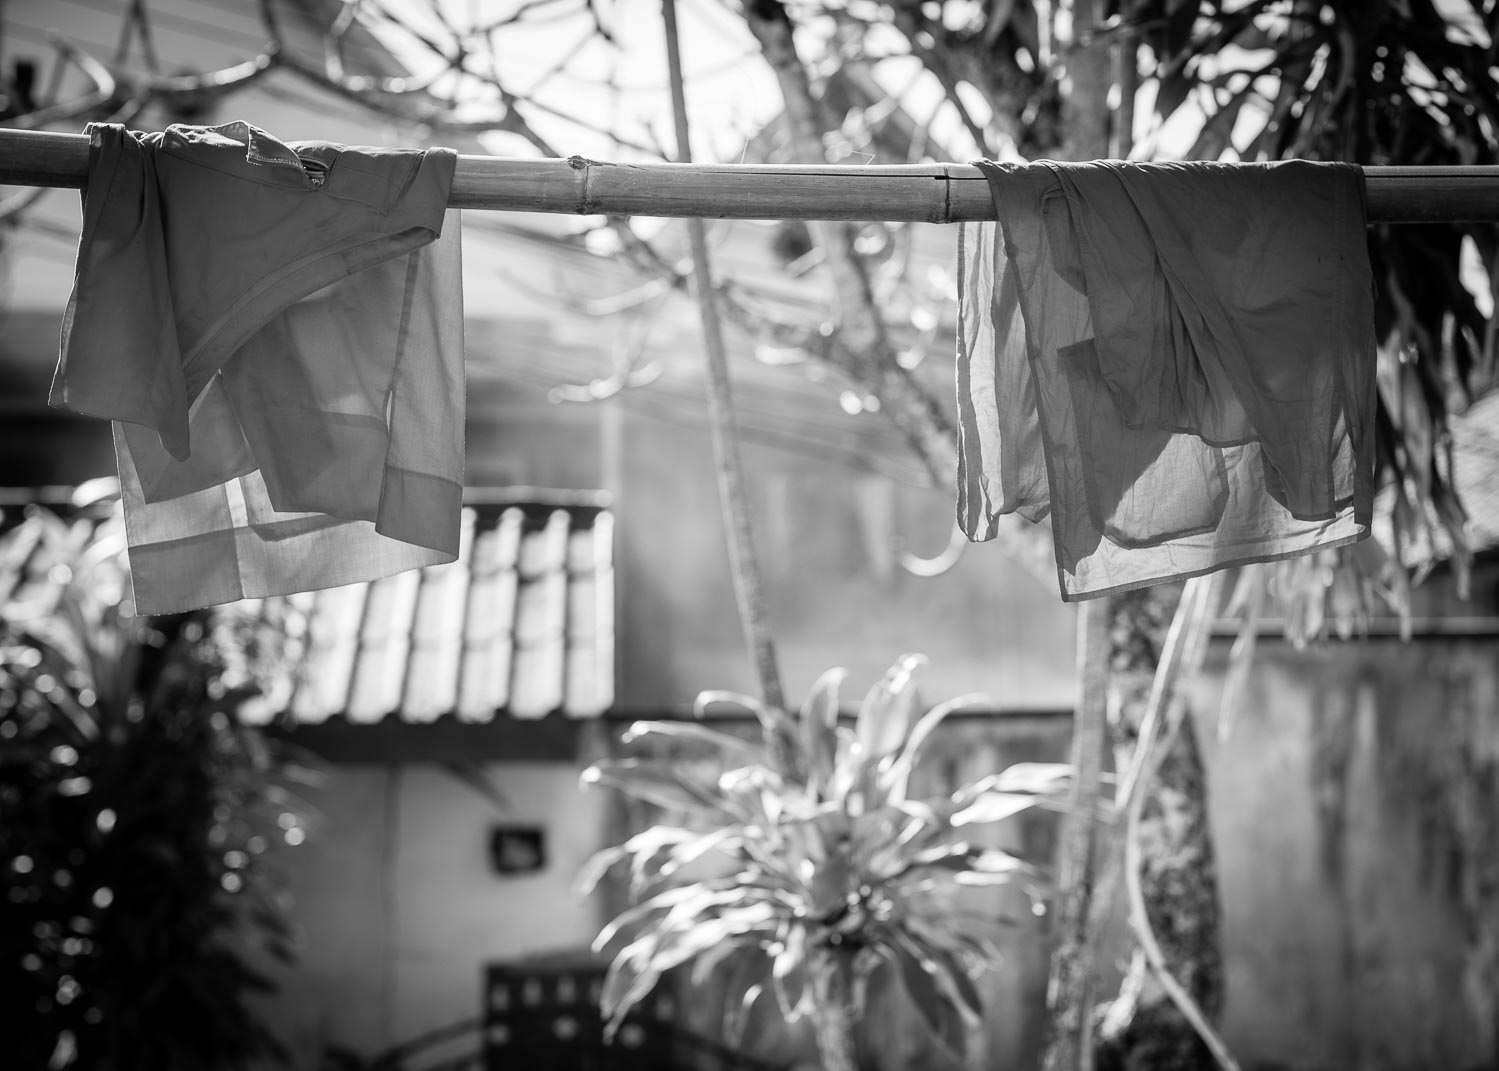 luang prabang monk robes washing line